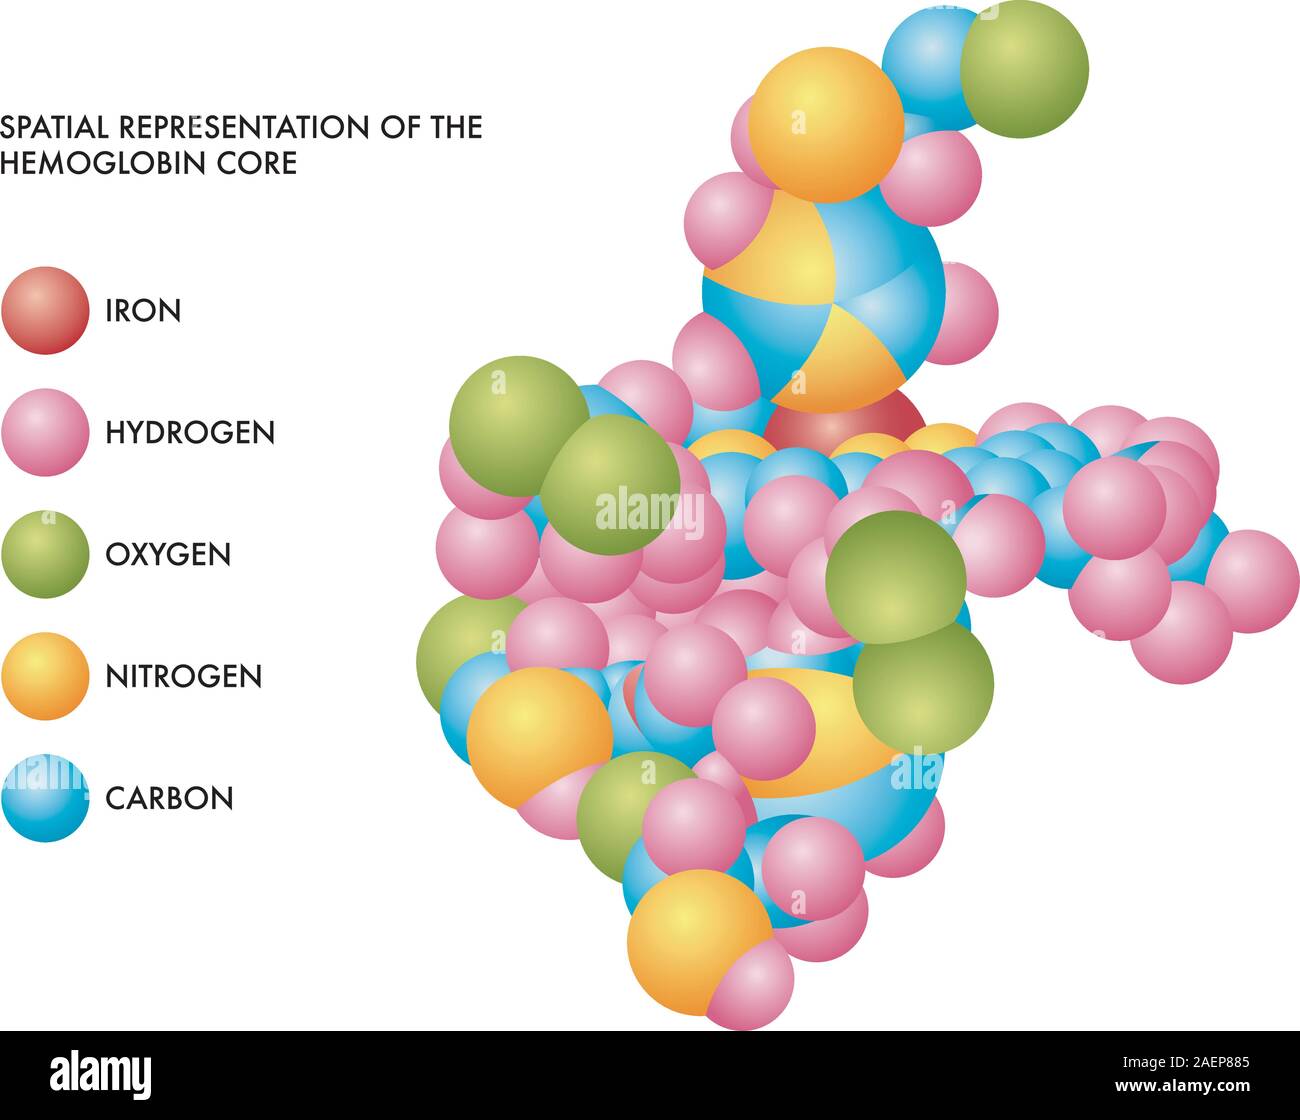 Illustration médicale de base de l'hémoglobine la représentation spatiale des molécules de fer, d'hydrogène, oxygène, azote et carbone dans les formes de couleur. Illustration de Vecteur